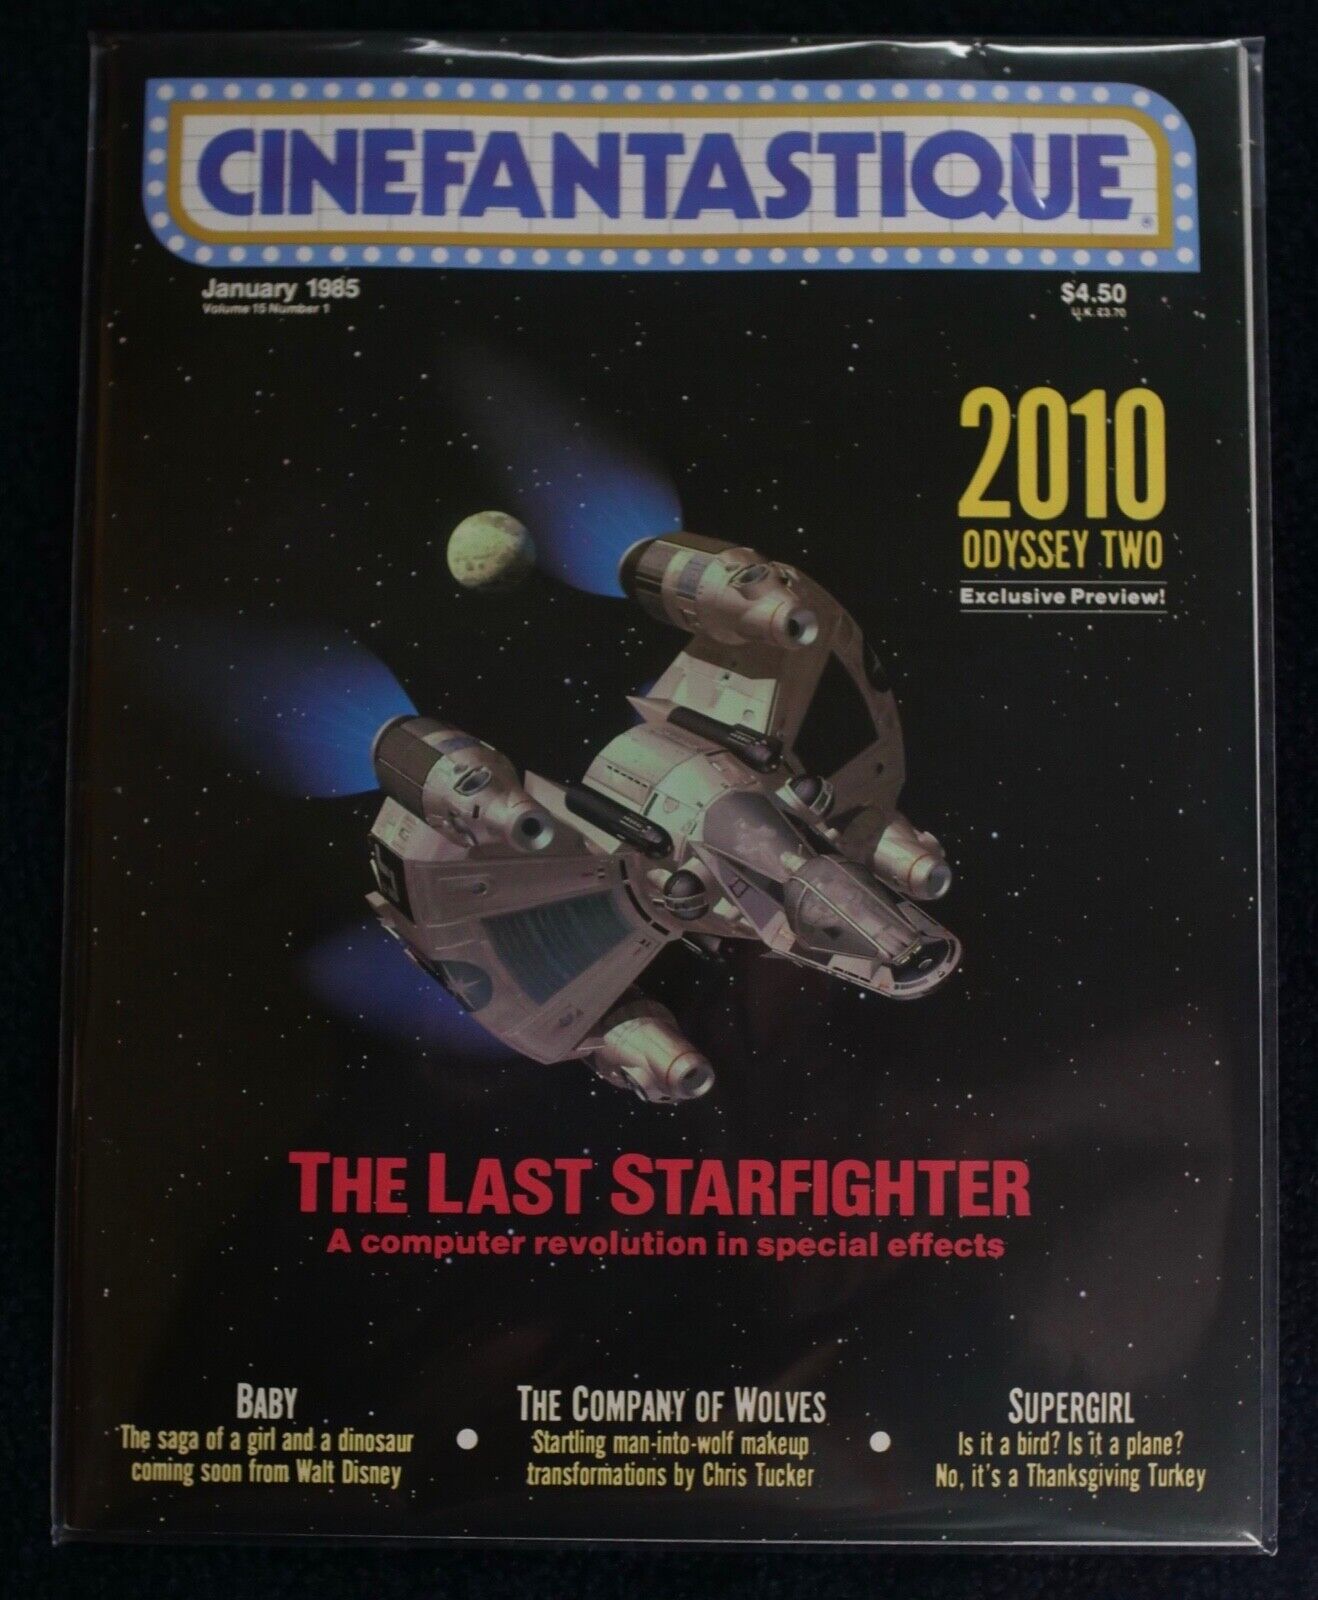 Cinefantastique Vol. 15 #1 Jan 1985  -The Last Starfighter, 2010 - NEW